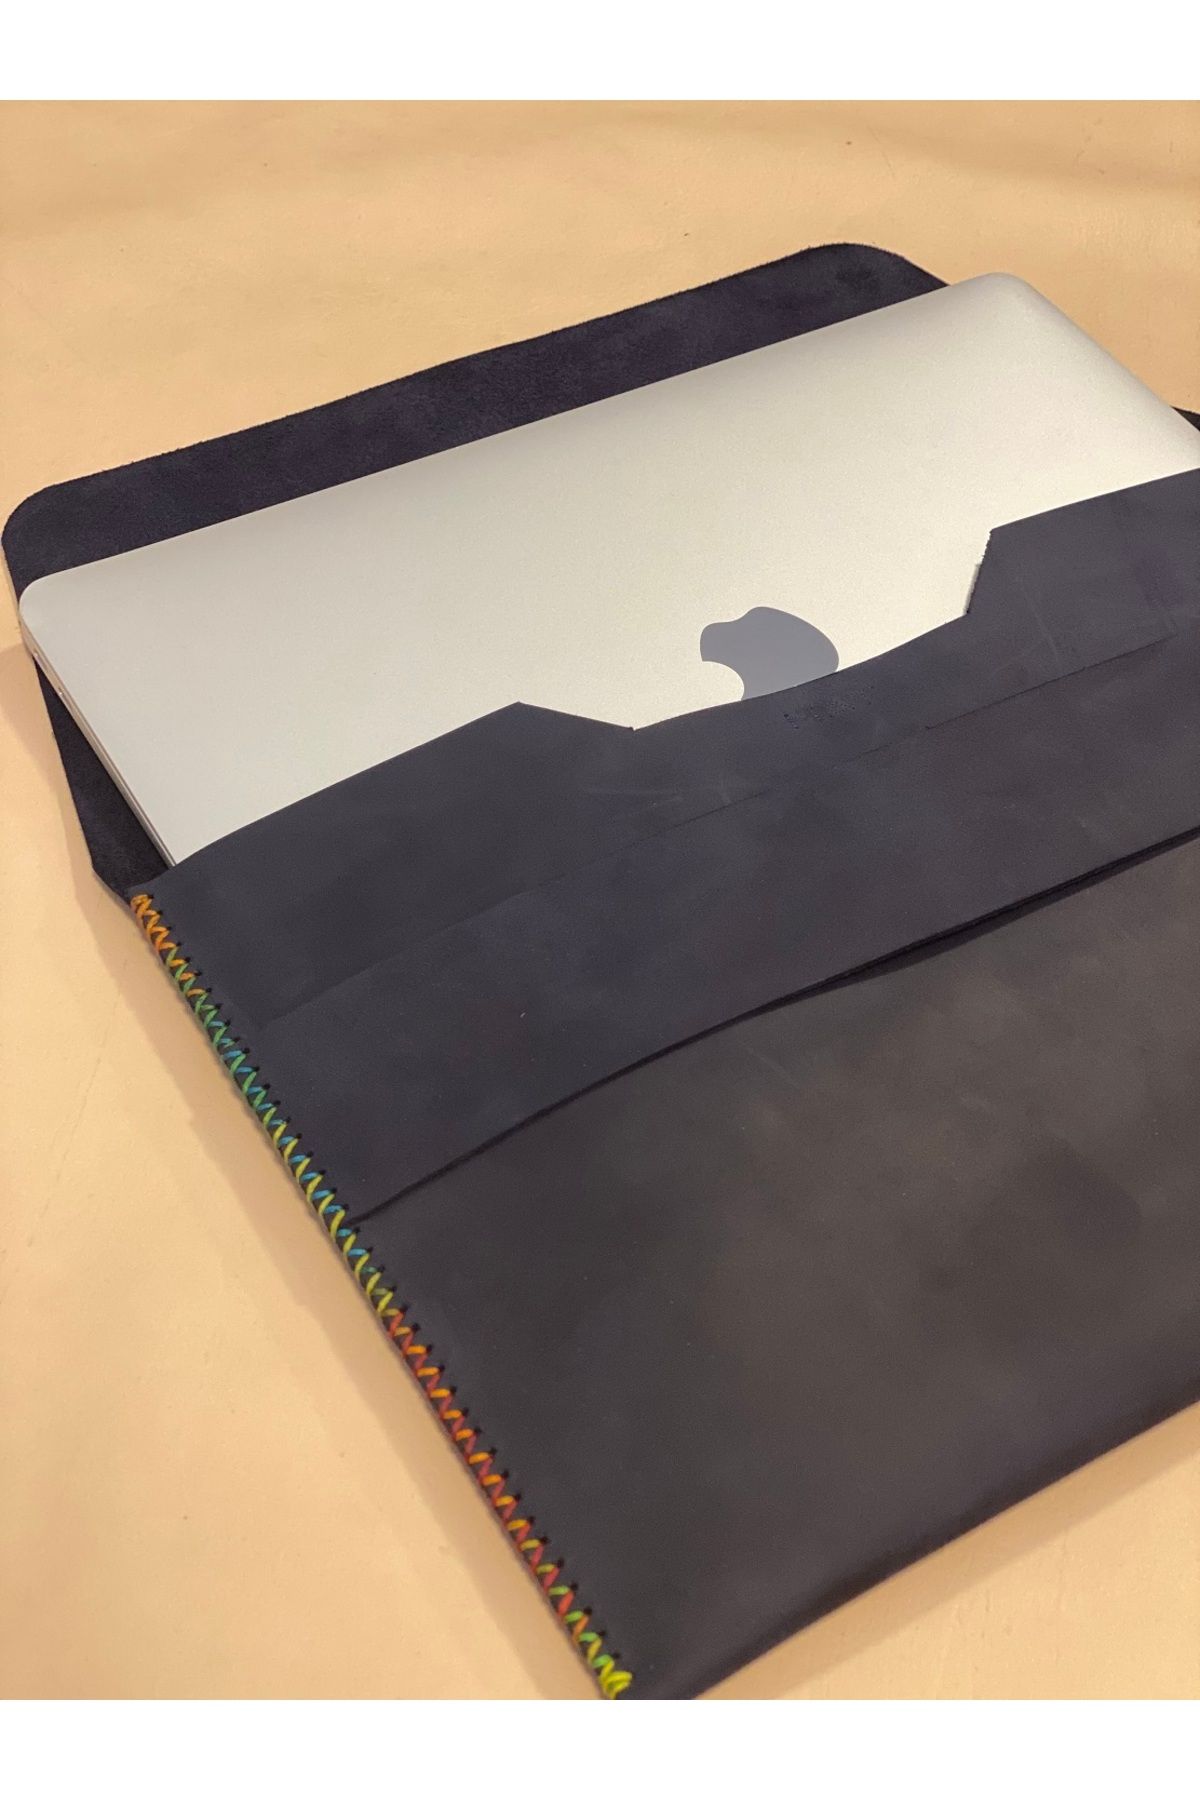 MAT Deri Macbook Çantası Lacivert 14 Inç Macbook Pro Uyumlu Nubuk Hakiki Deri Kılıf